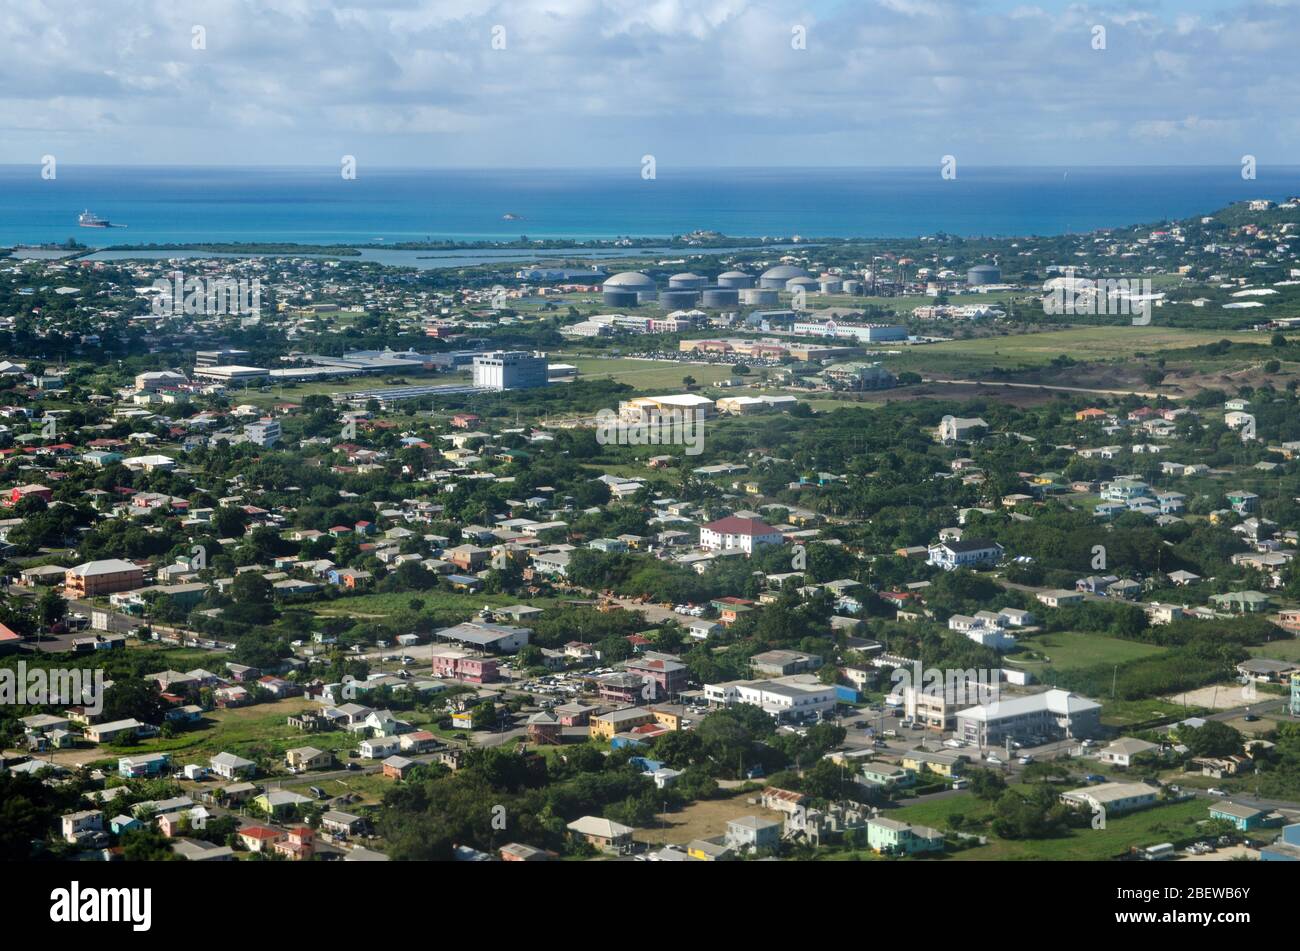 Luftaufnahme der Stadt St. John's, Antigua und Barbuda mit Blick über Häuser zu mehreren Einkaufszentren und der West Indies Oil Company Termina Stockfoto